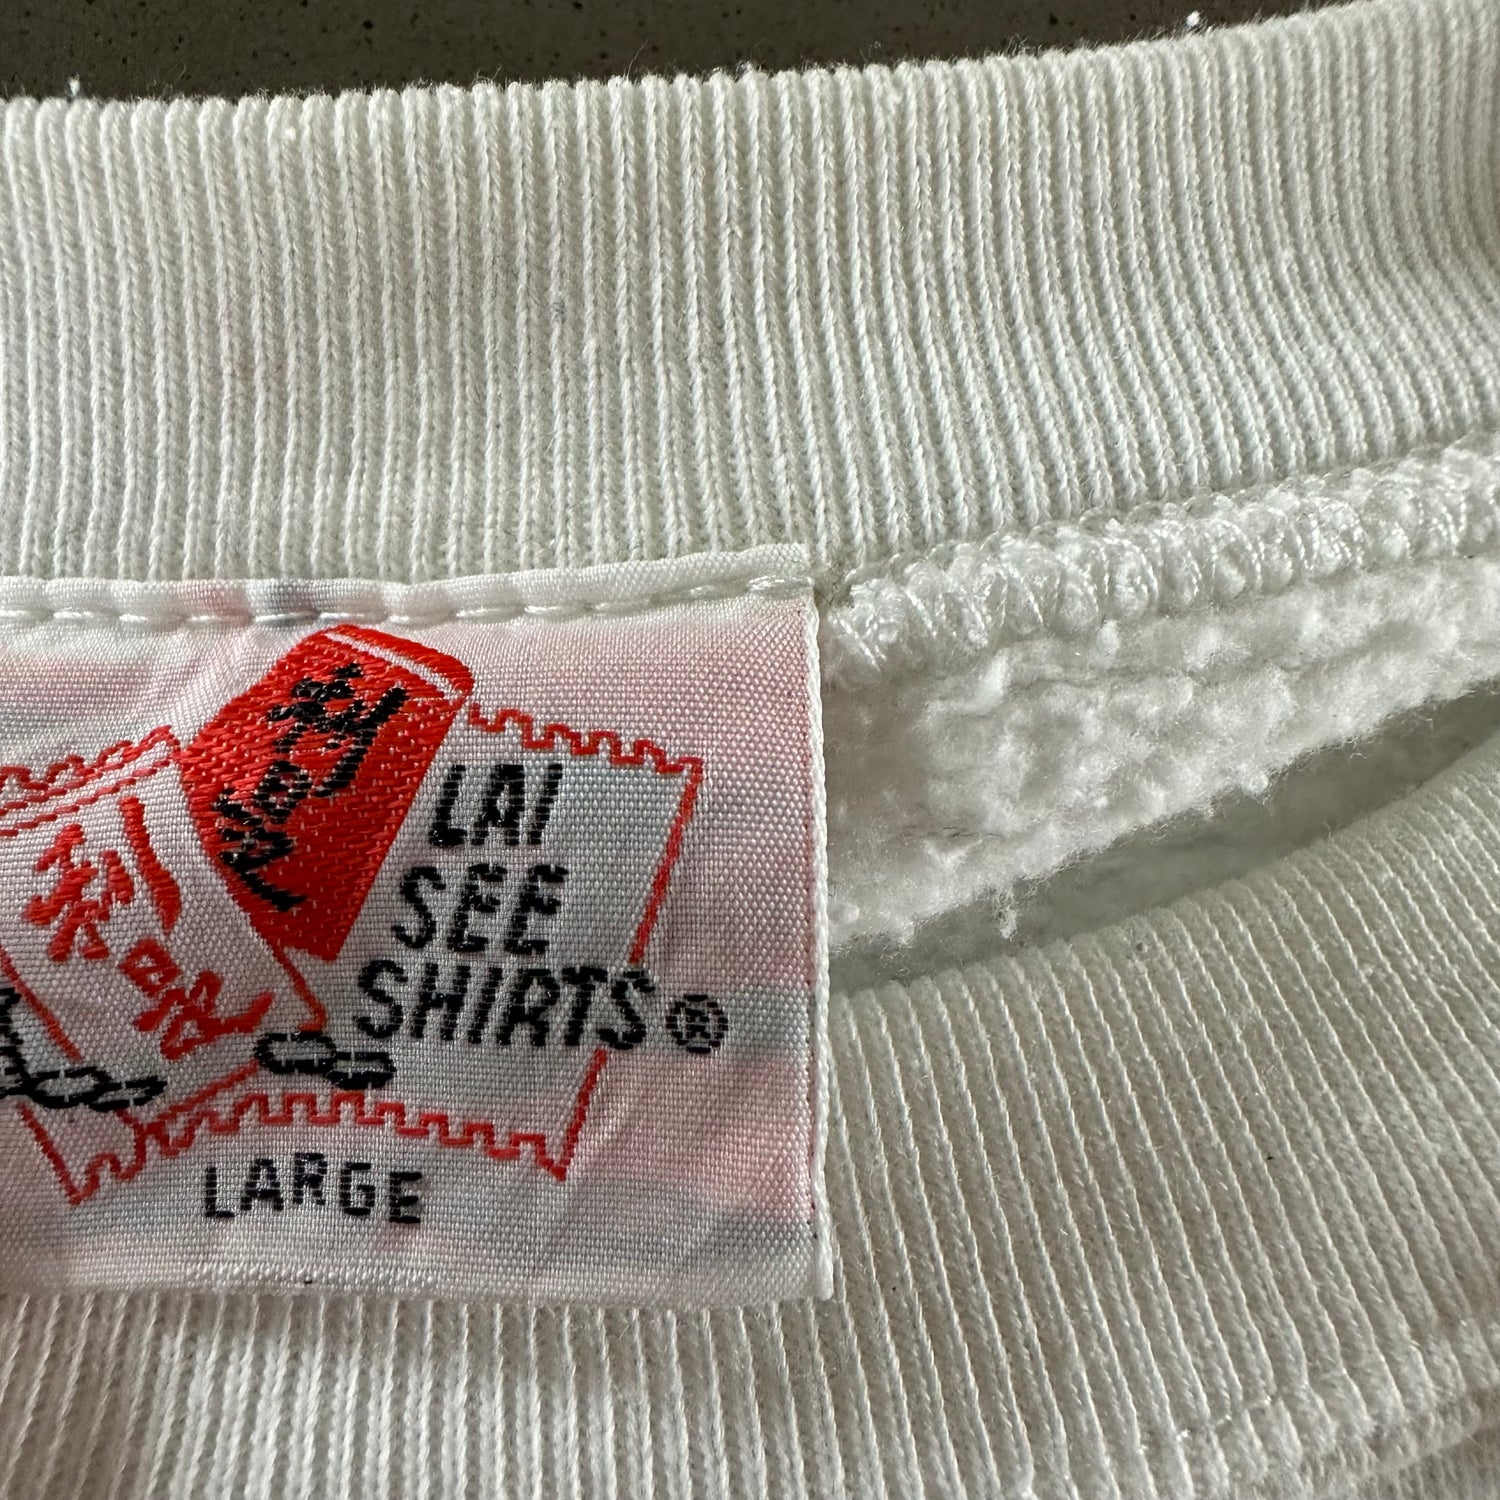 Vintage 1990s Hong Kong Sweatshirt size Large